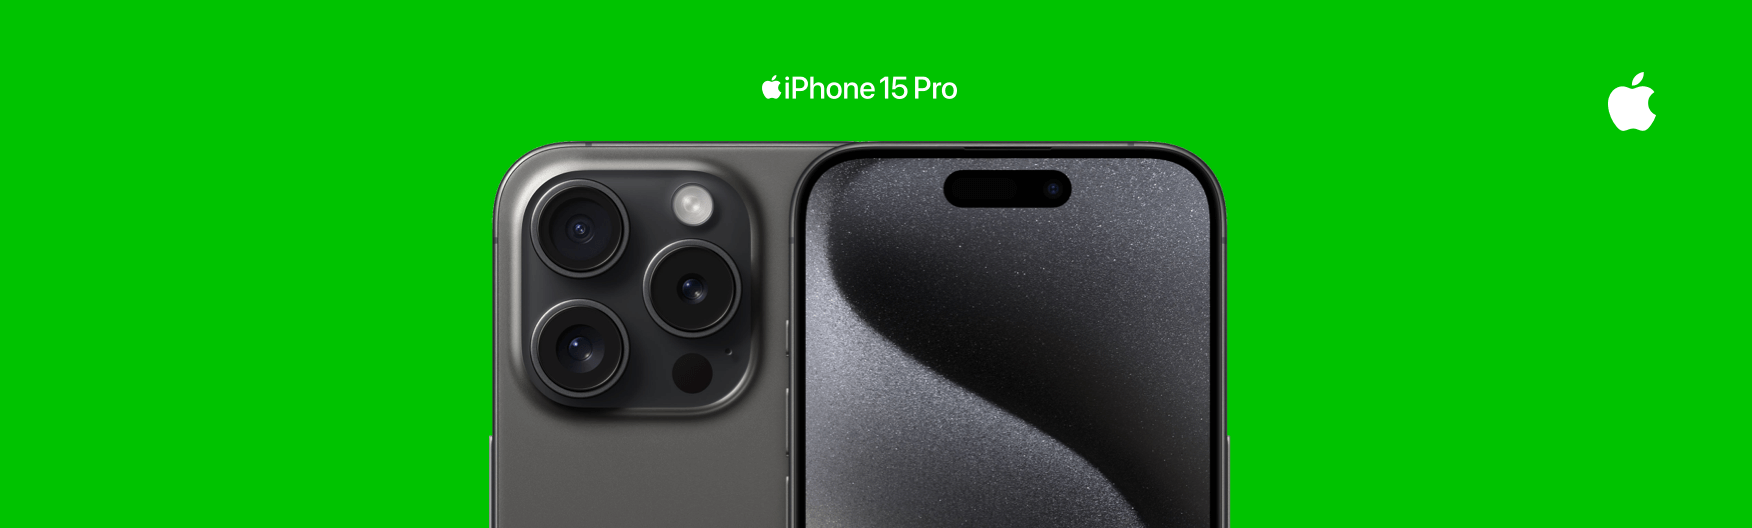 De voor- en achterkant van de iPhone 15 Pro